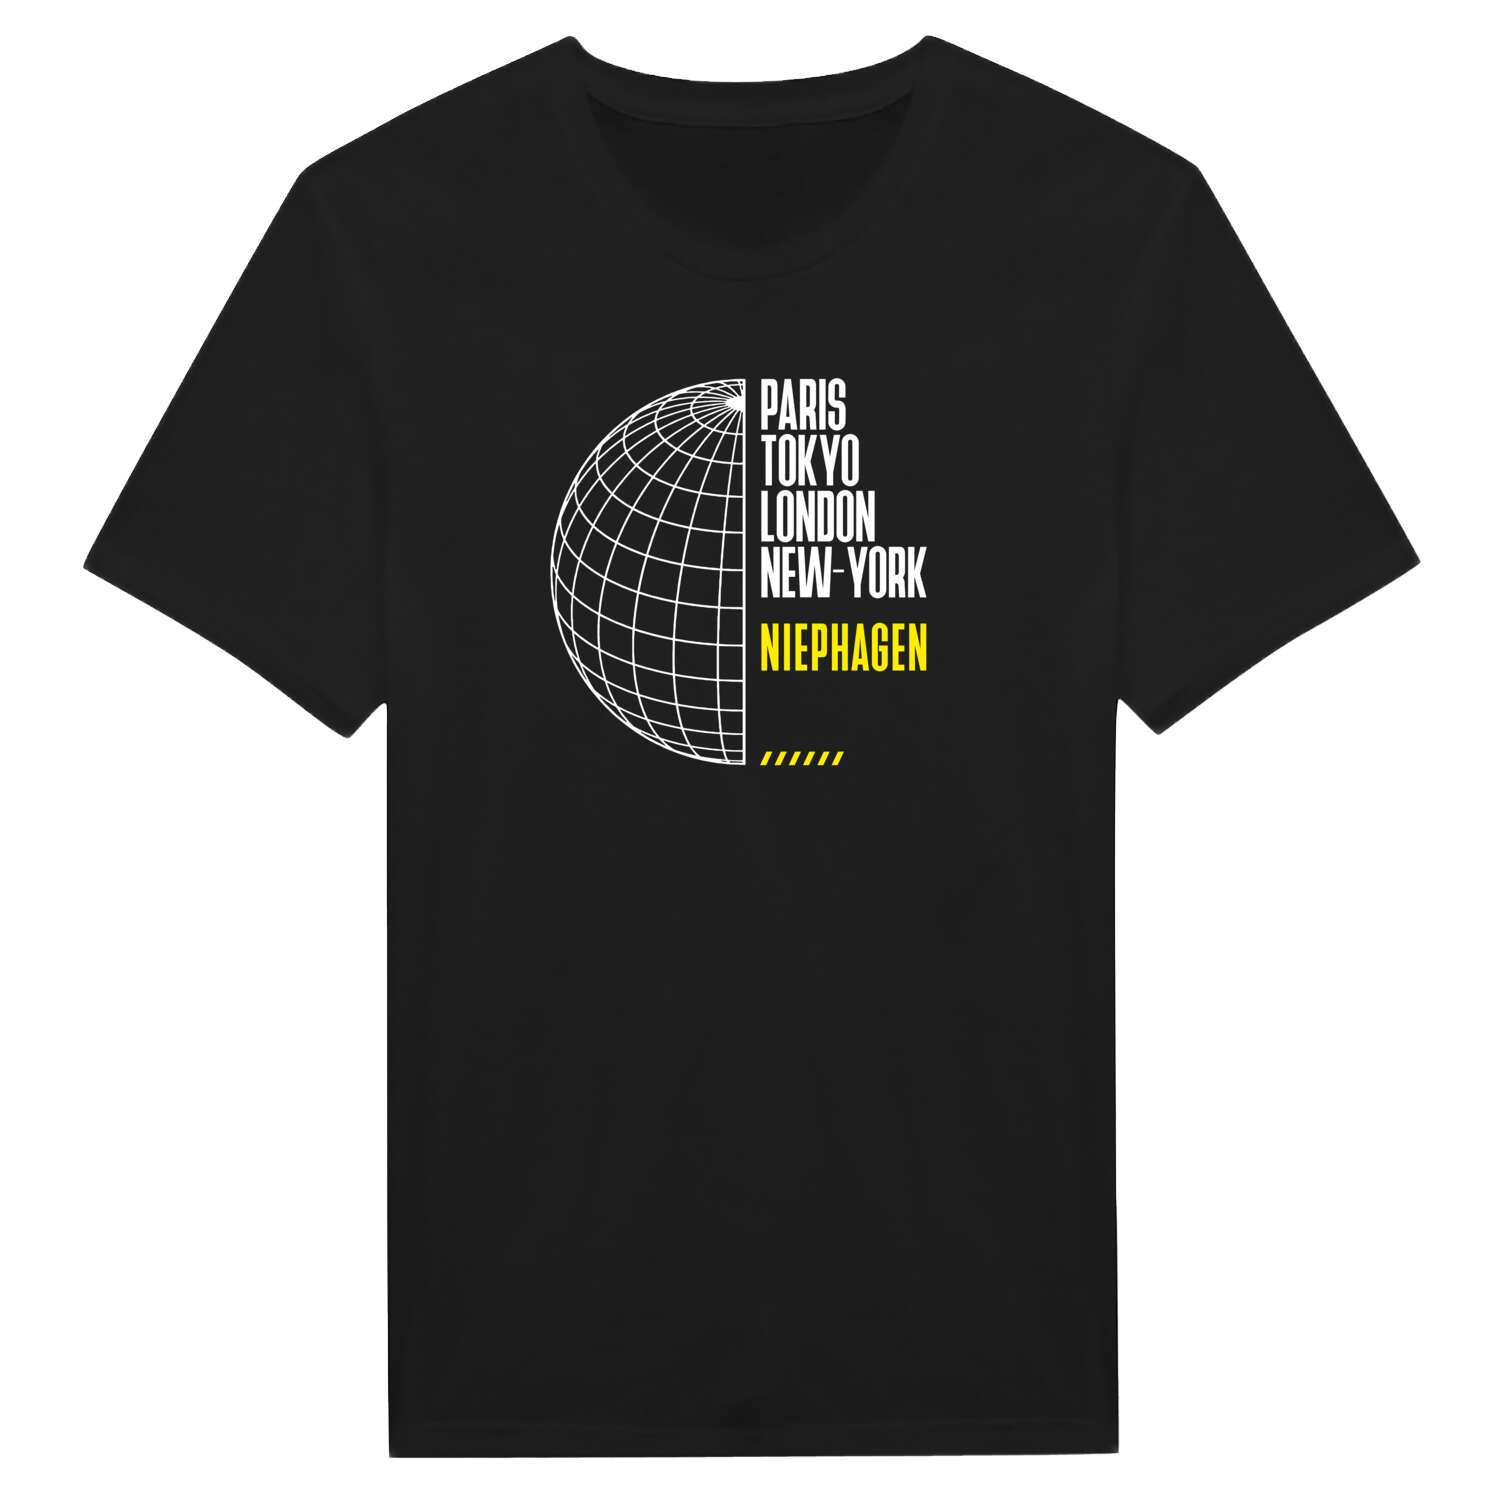 Niephagen T-Shirt »Paris Tokyo London«